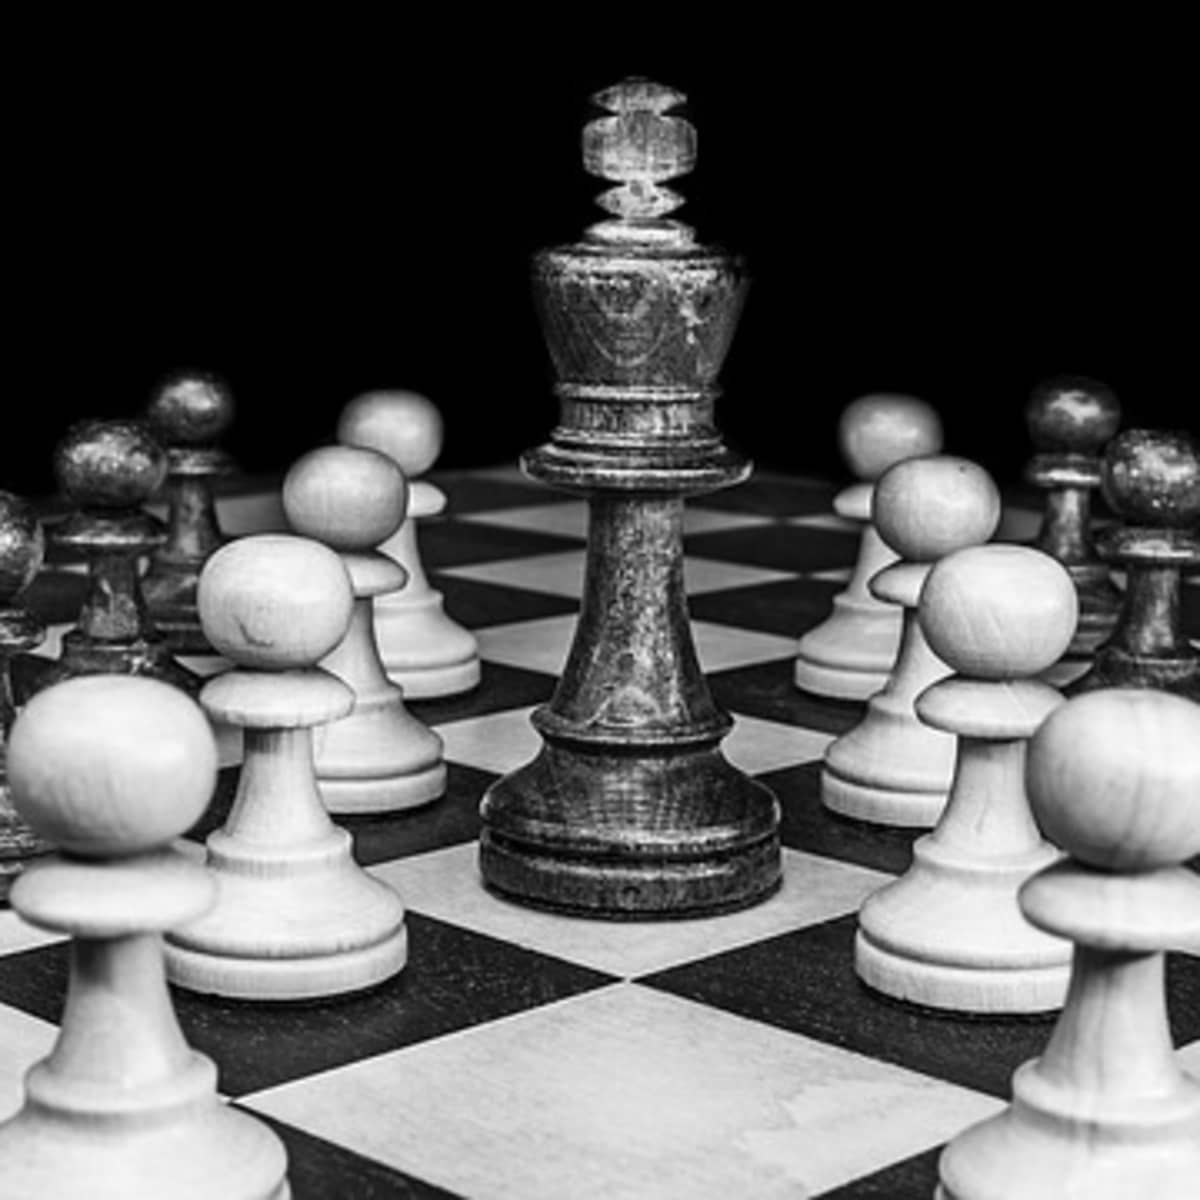 Chaturanga: Four-Player Chess With Dice - HobbyLark